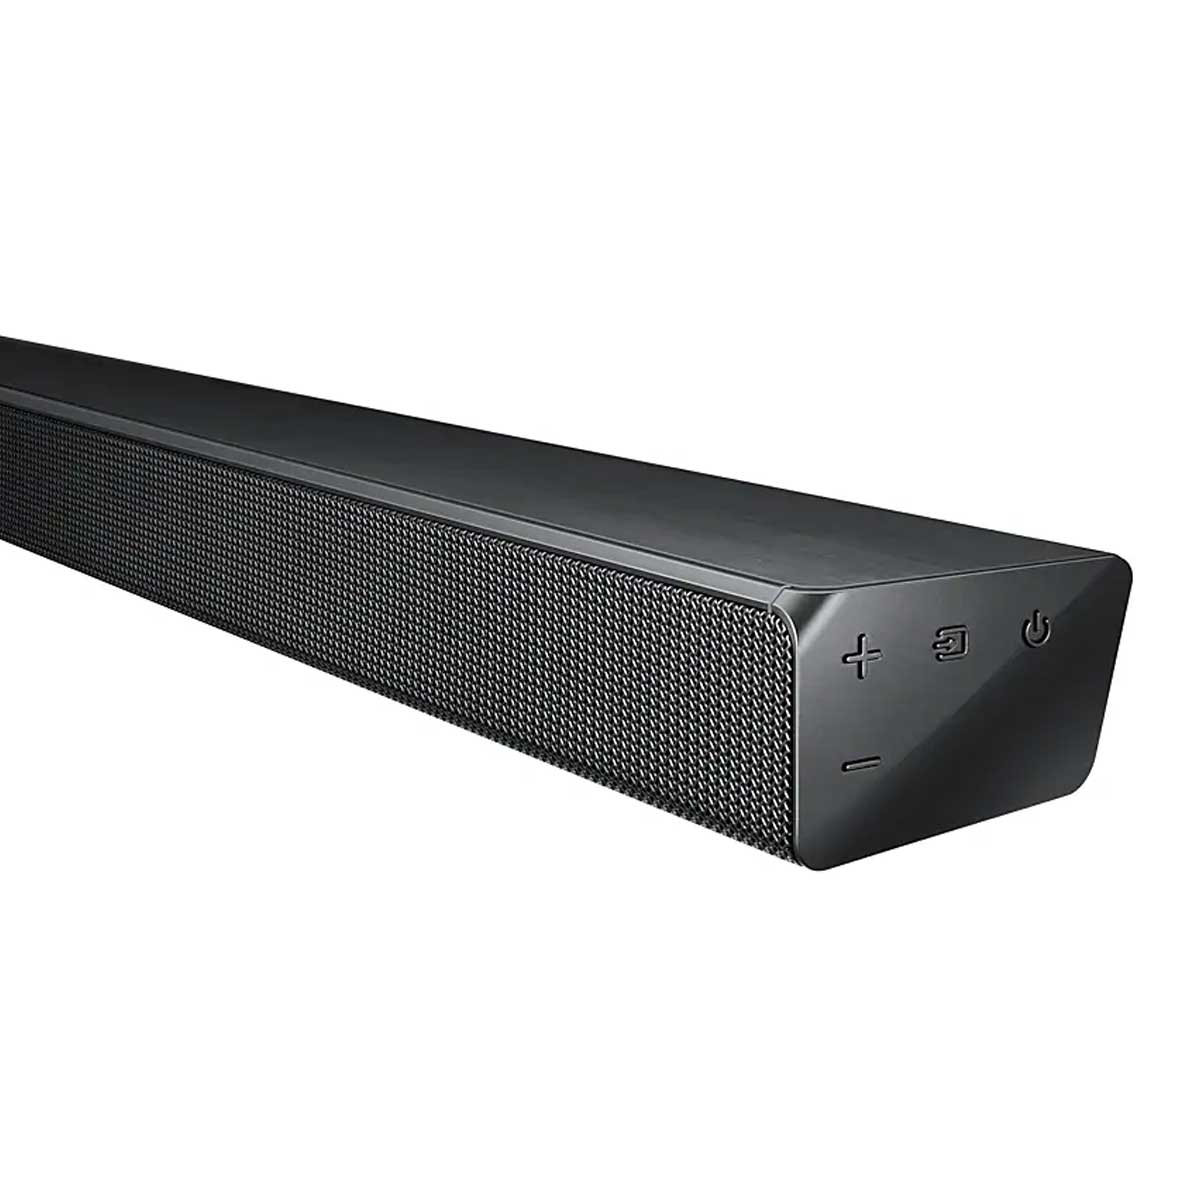 Loa Soundbar Samsung HW-R650/XV 3.1 CH